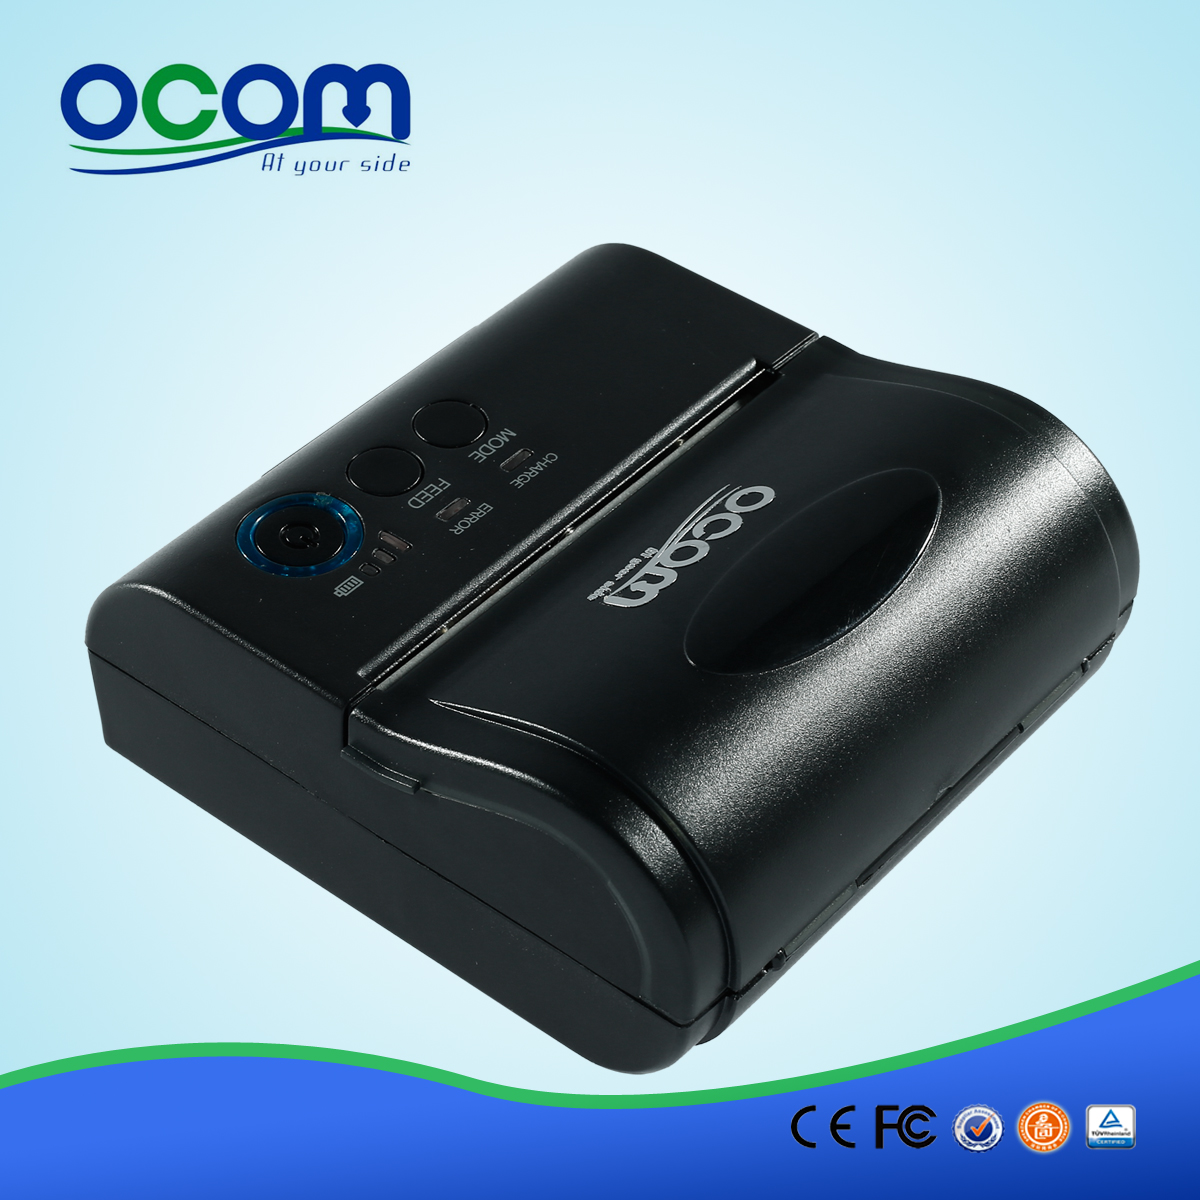 Горячий! OCPP-M082 дешевый портативный мини Bluetooth принтер с адаптером